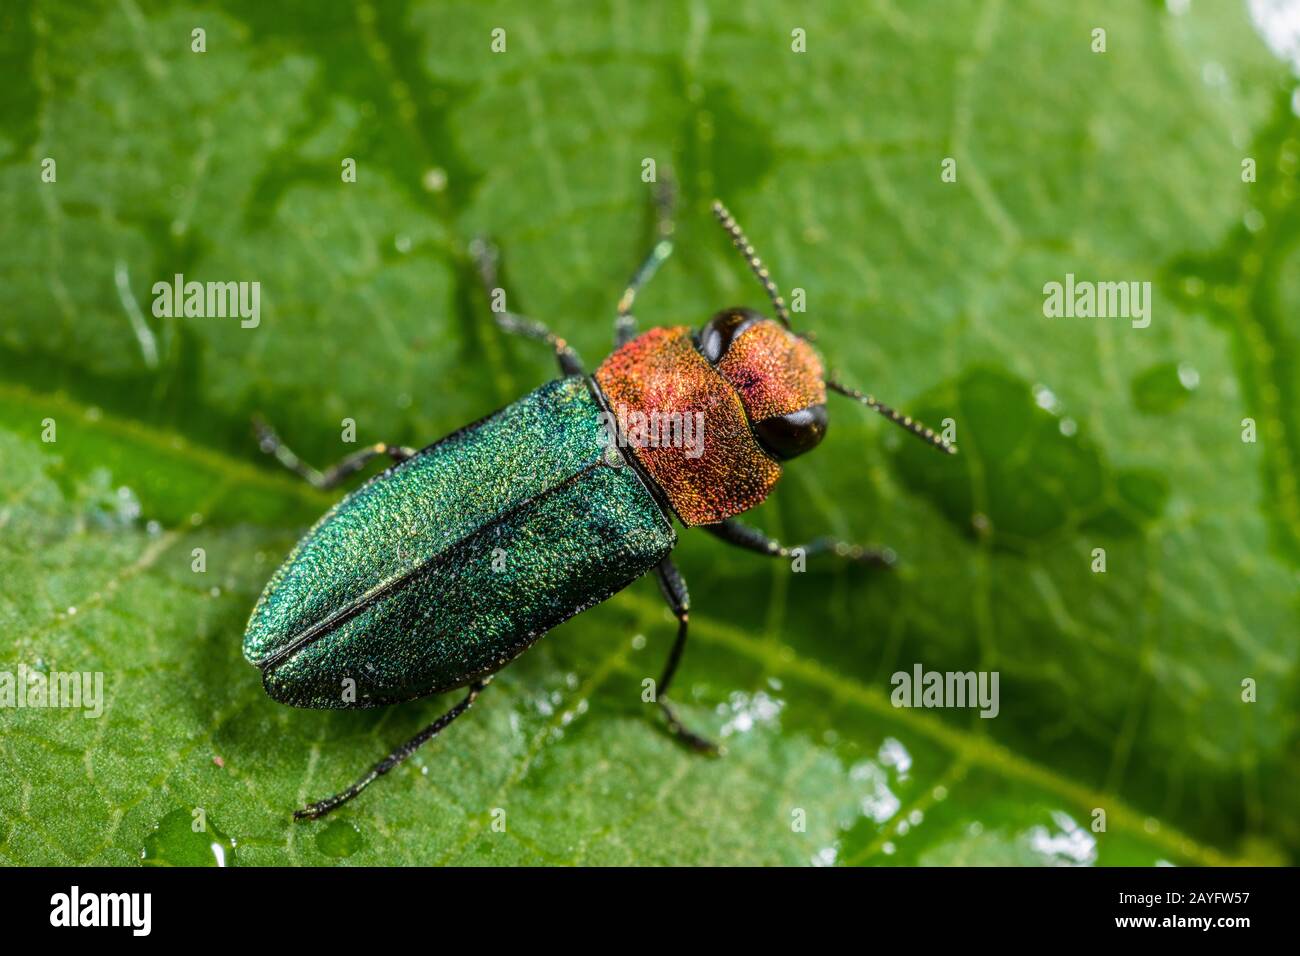 Jewel beetle, coléoptère bois métallique (Anthaxia nitidula), Femme, Allemagne Banque D'Images